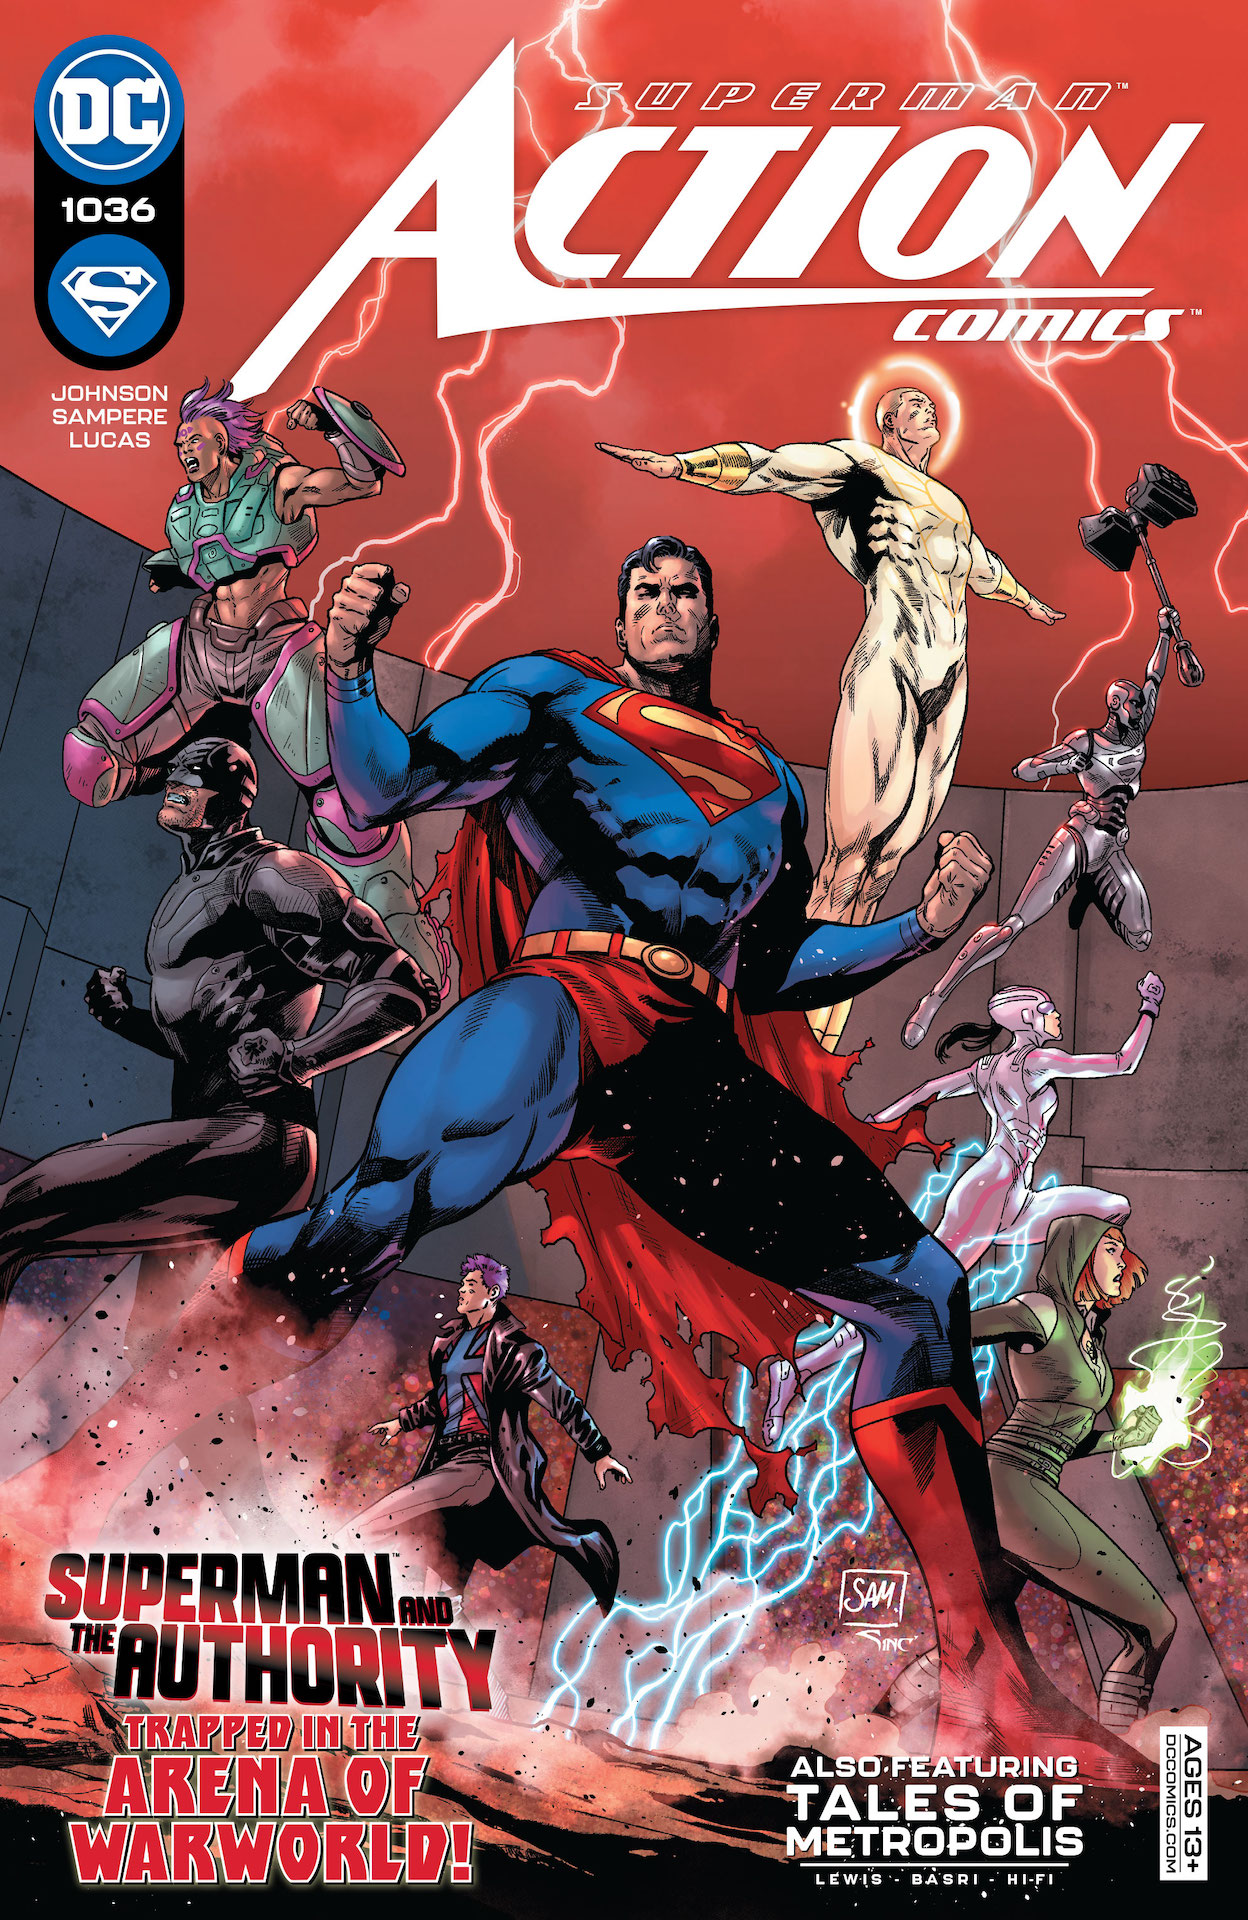 DC Preview: Action Comics #1036